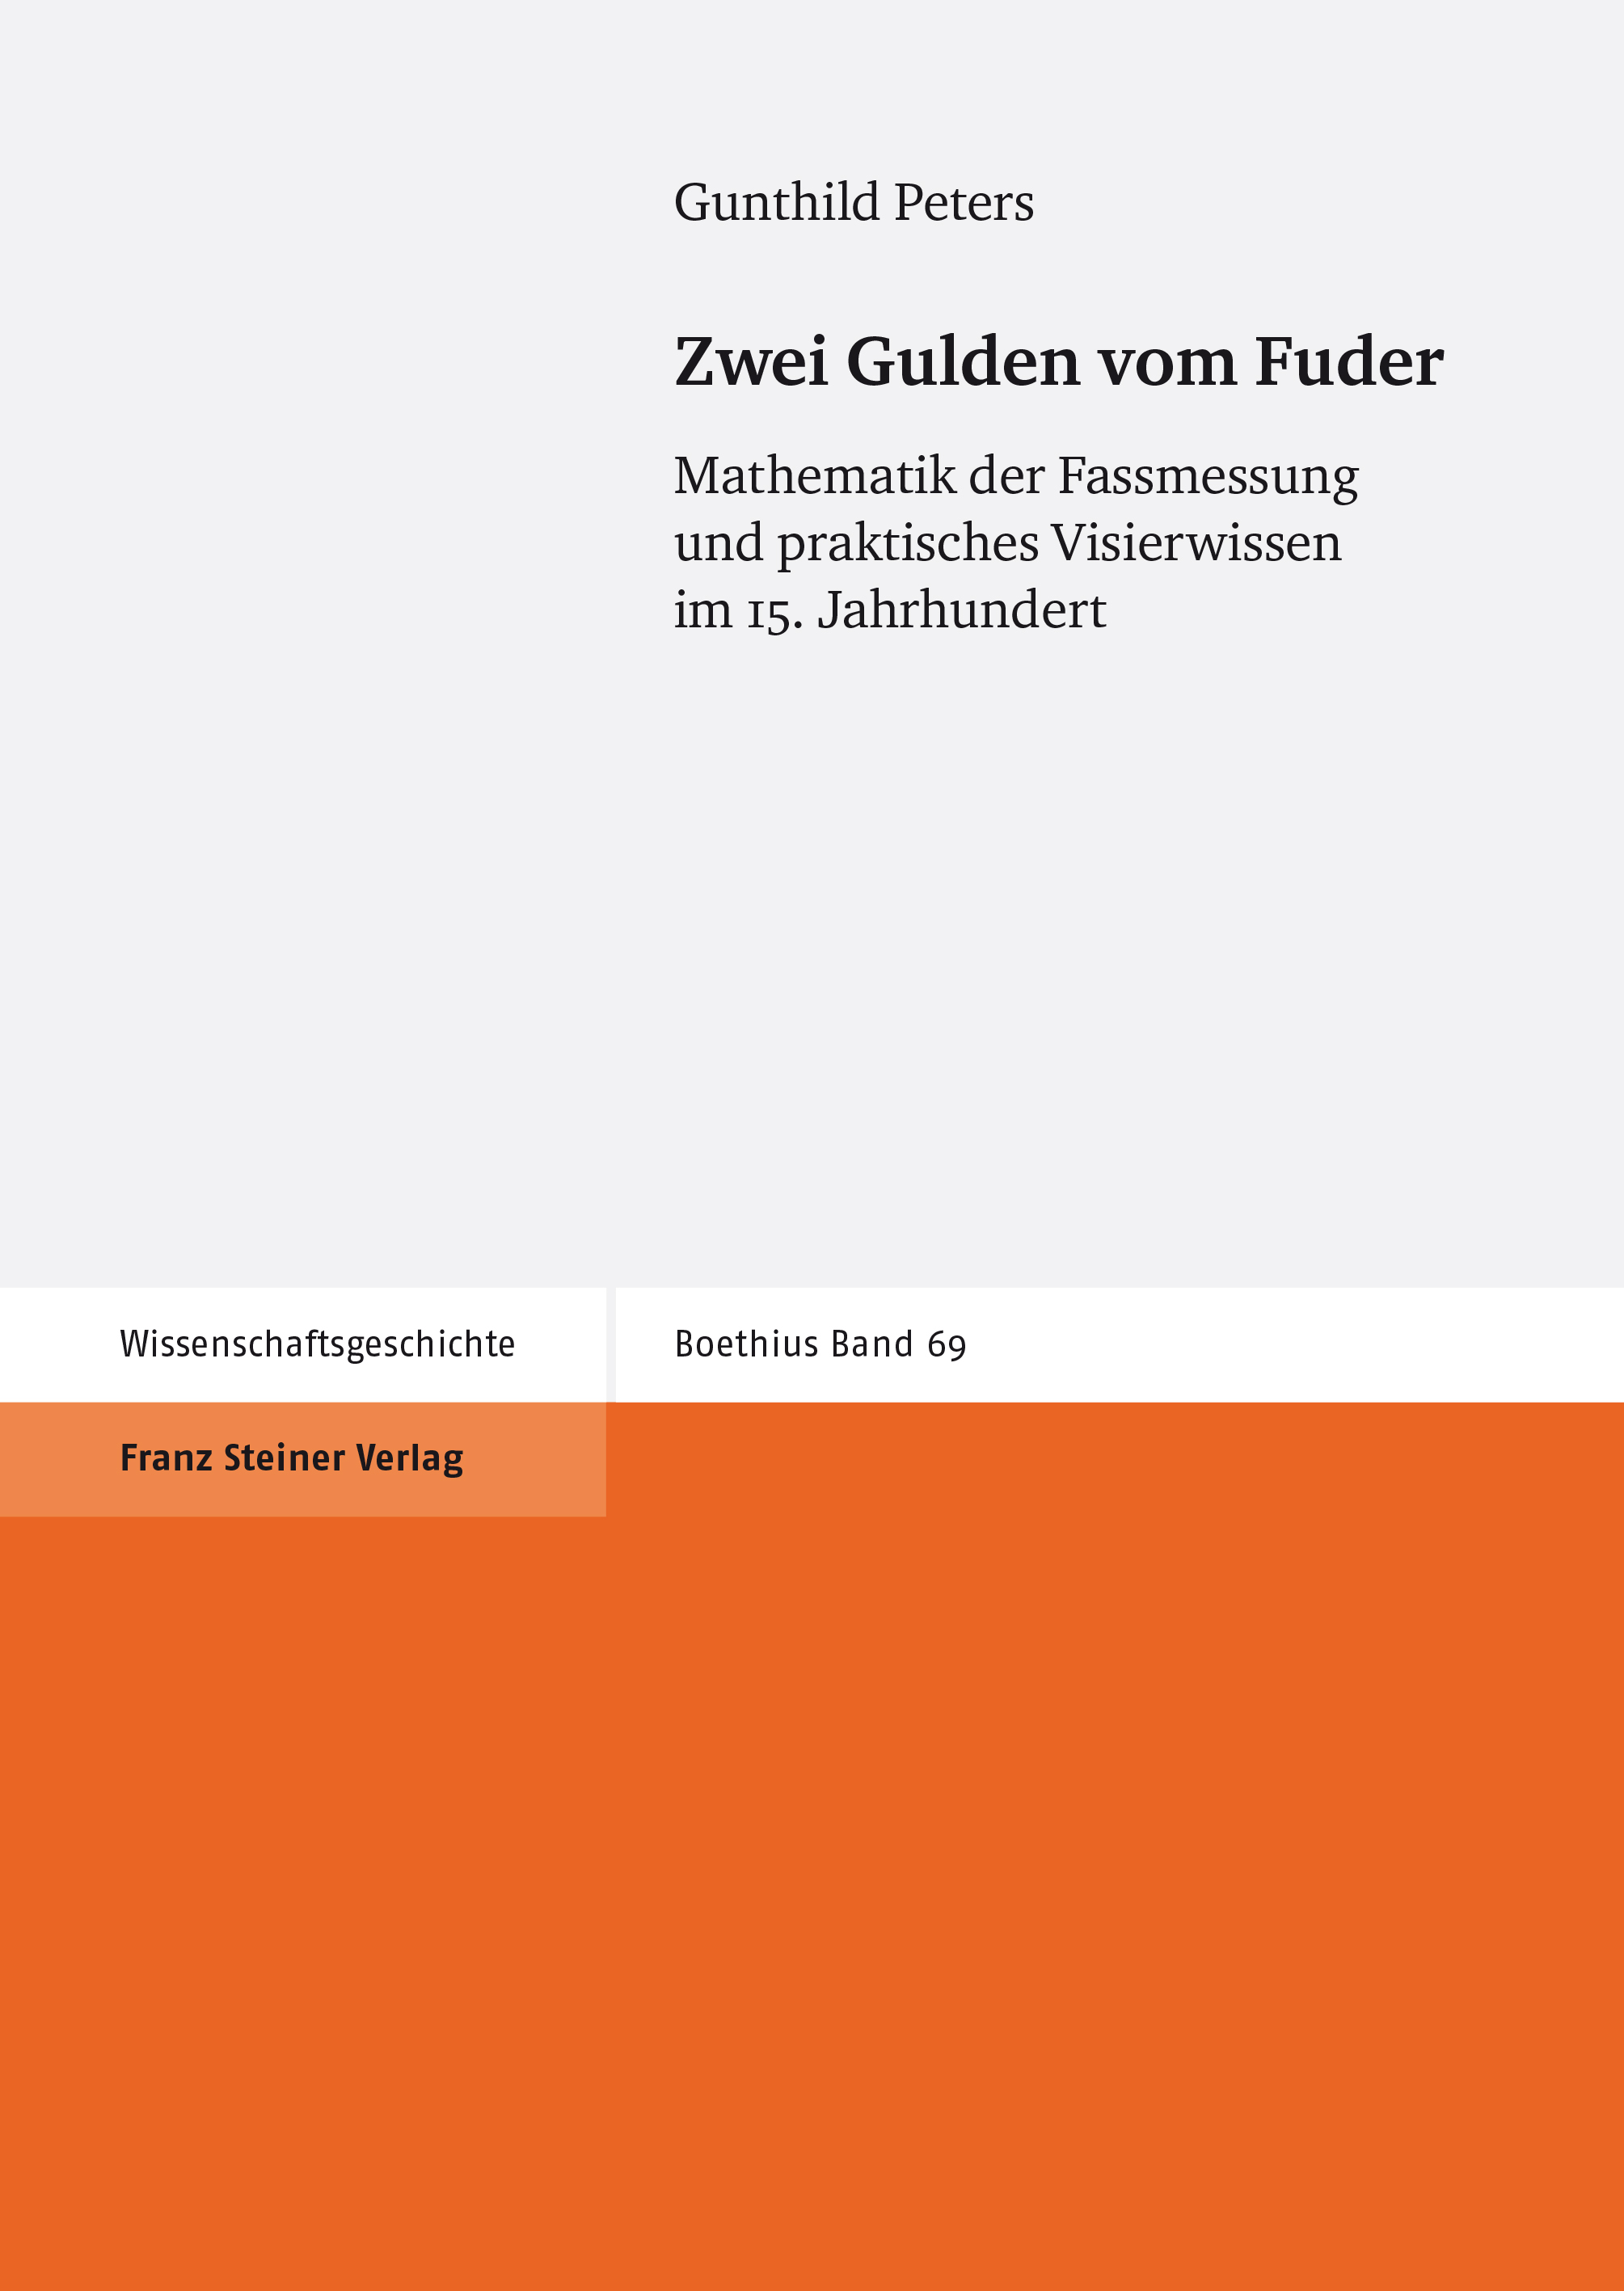 book cover: Gunthild Peters: Zwei Gulden vom Fuder. Mathematik der Fassmessung und praktisches Visierwissen im 15. Jahrhhundert (2018)